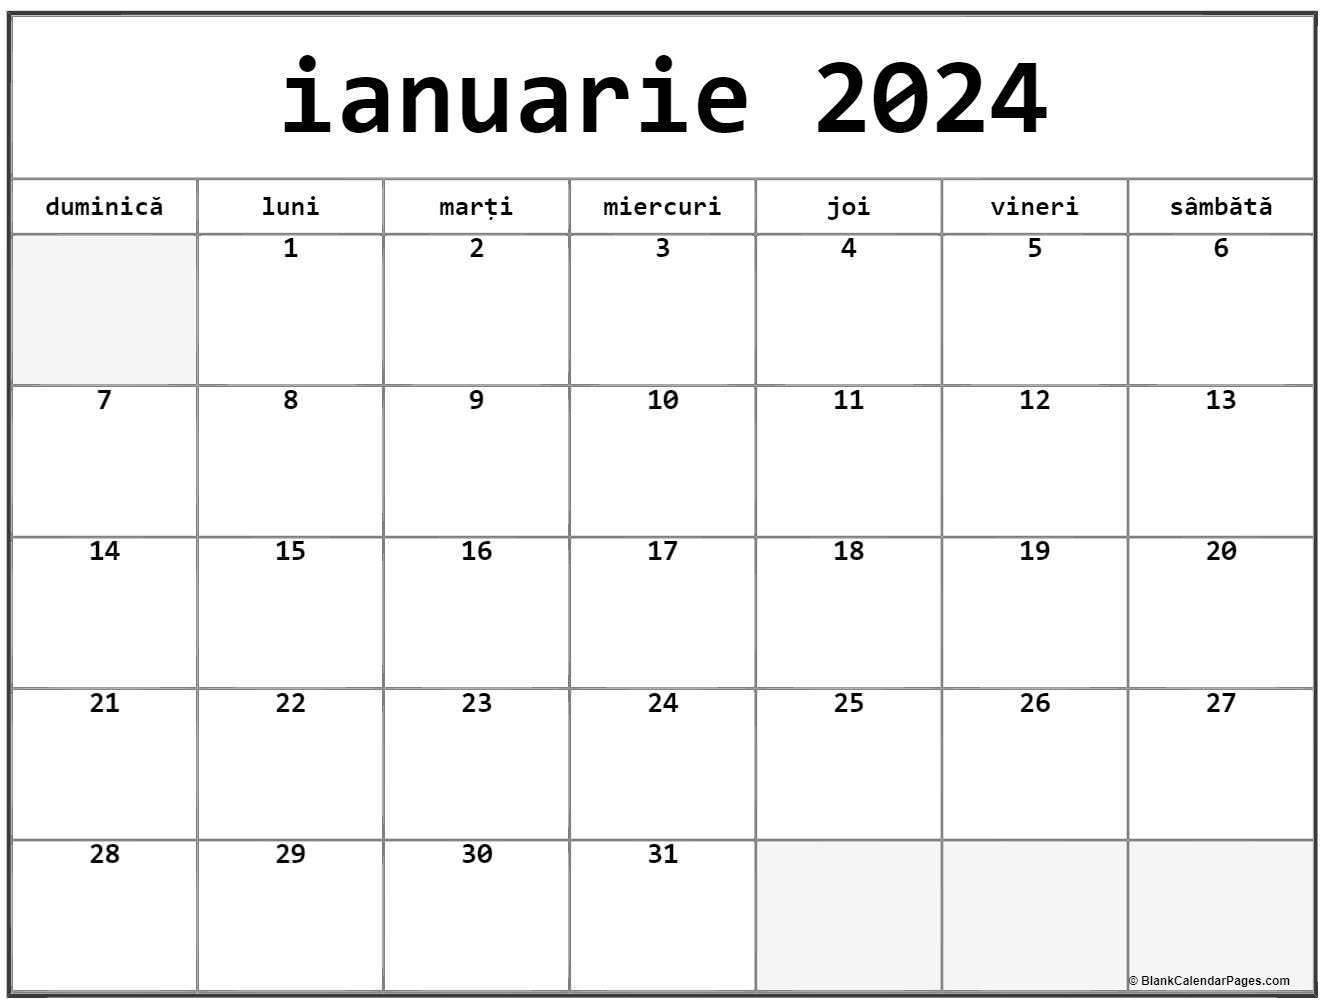 Calendarul ianuarie 2024 imprimabil gratuit in romana